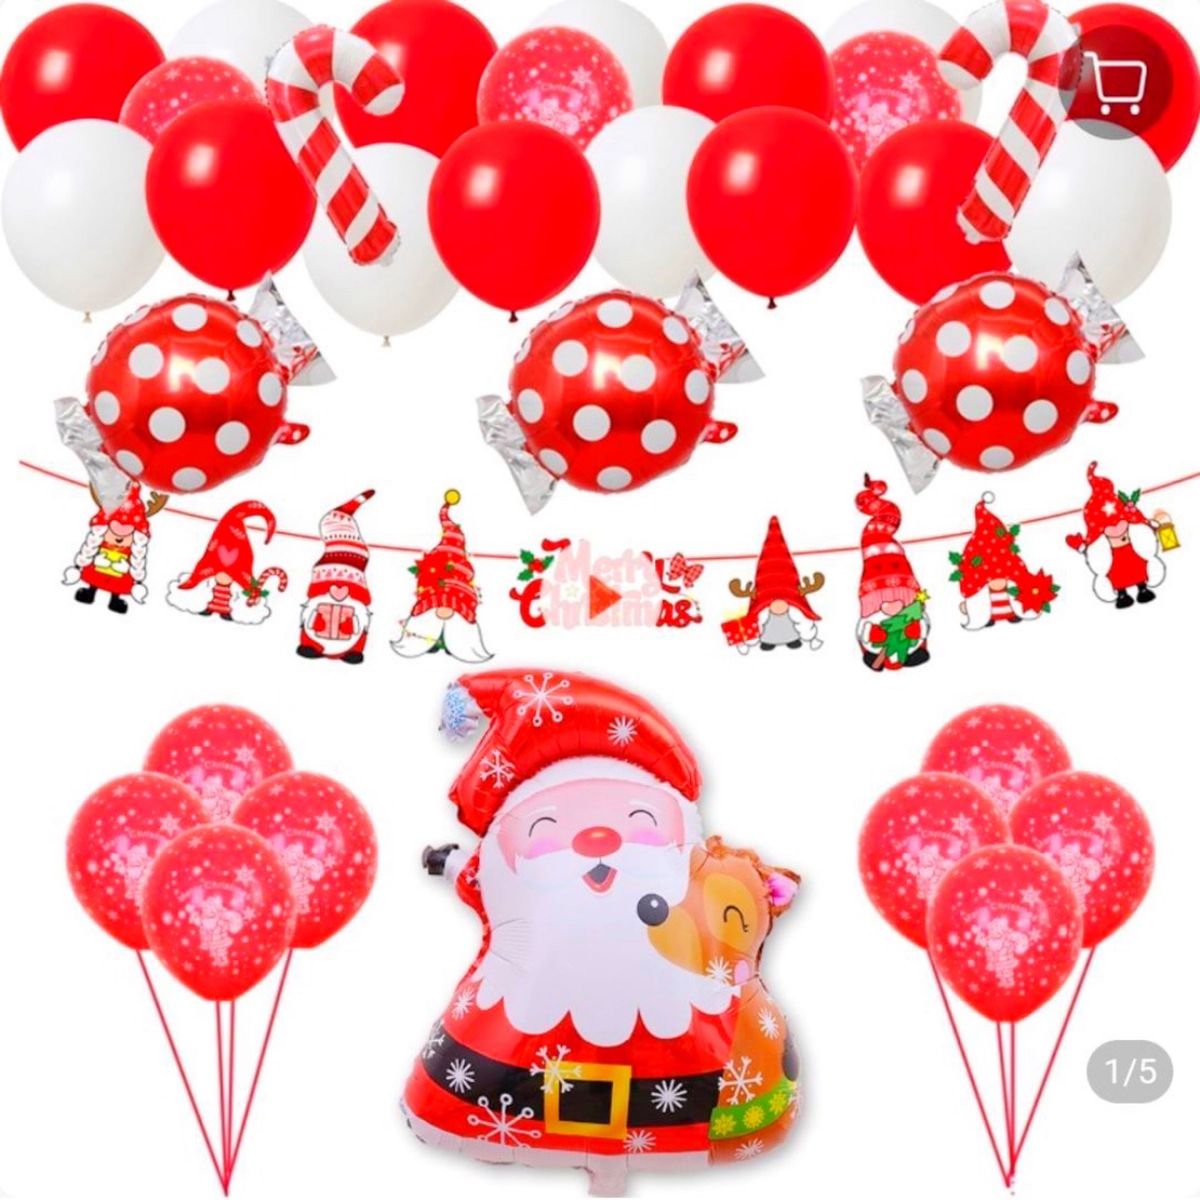 クリスマス バルーン パーティ サンタ 風船 ガーランド キャンディ 赤 白 サンタクロース レッド 飾り付け